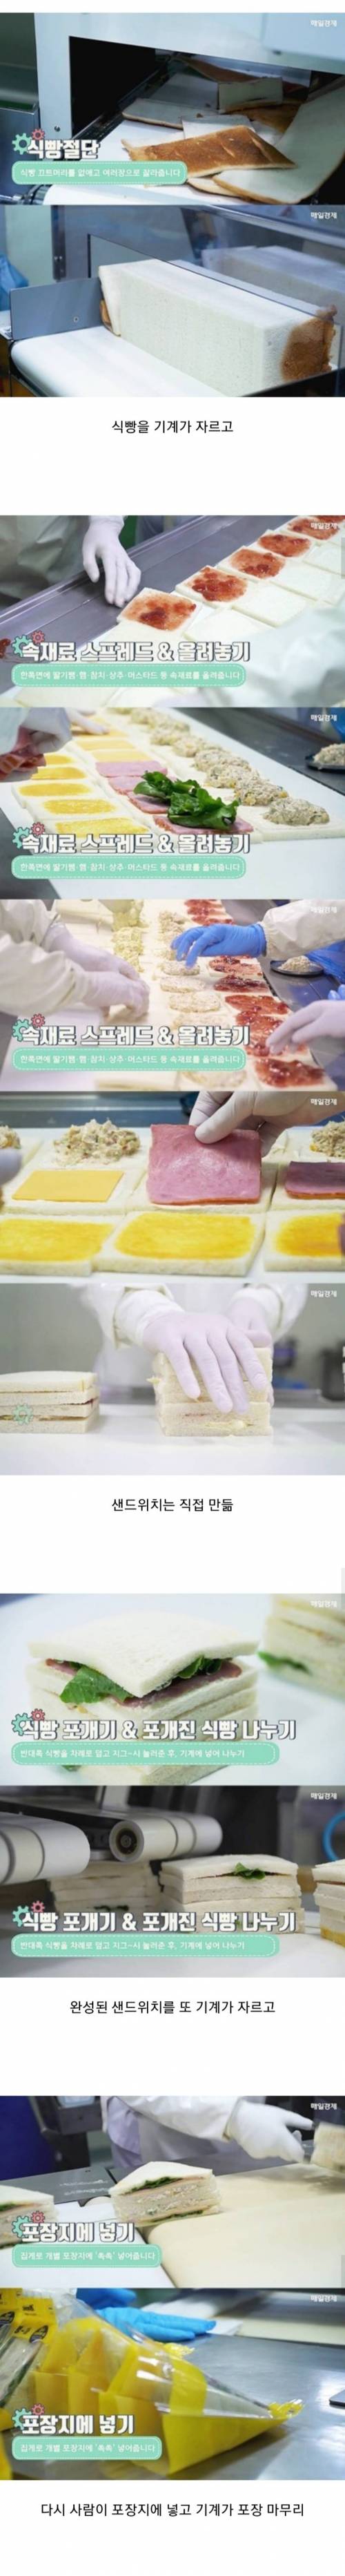 편의점 샌드위치 제조 과정.jpg